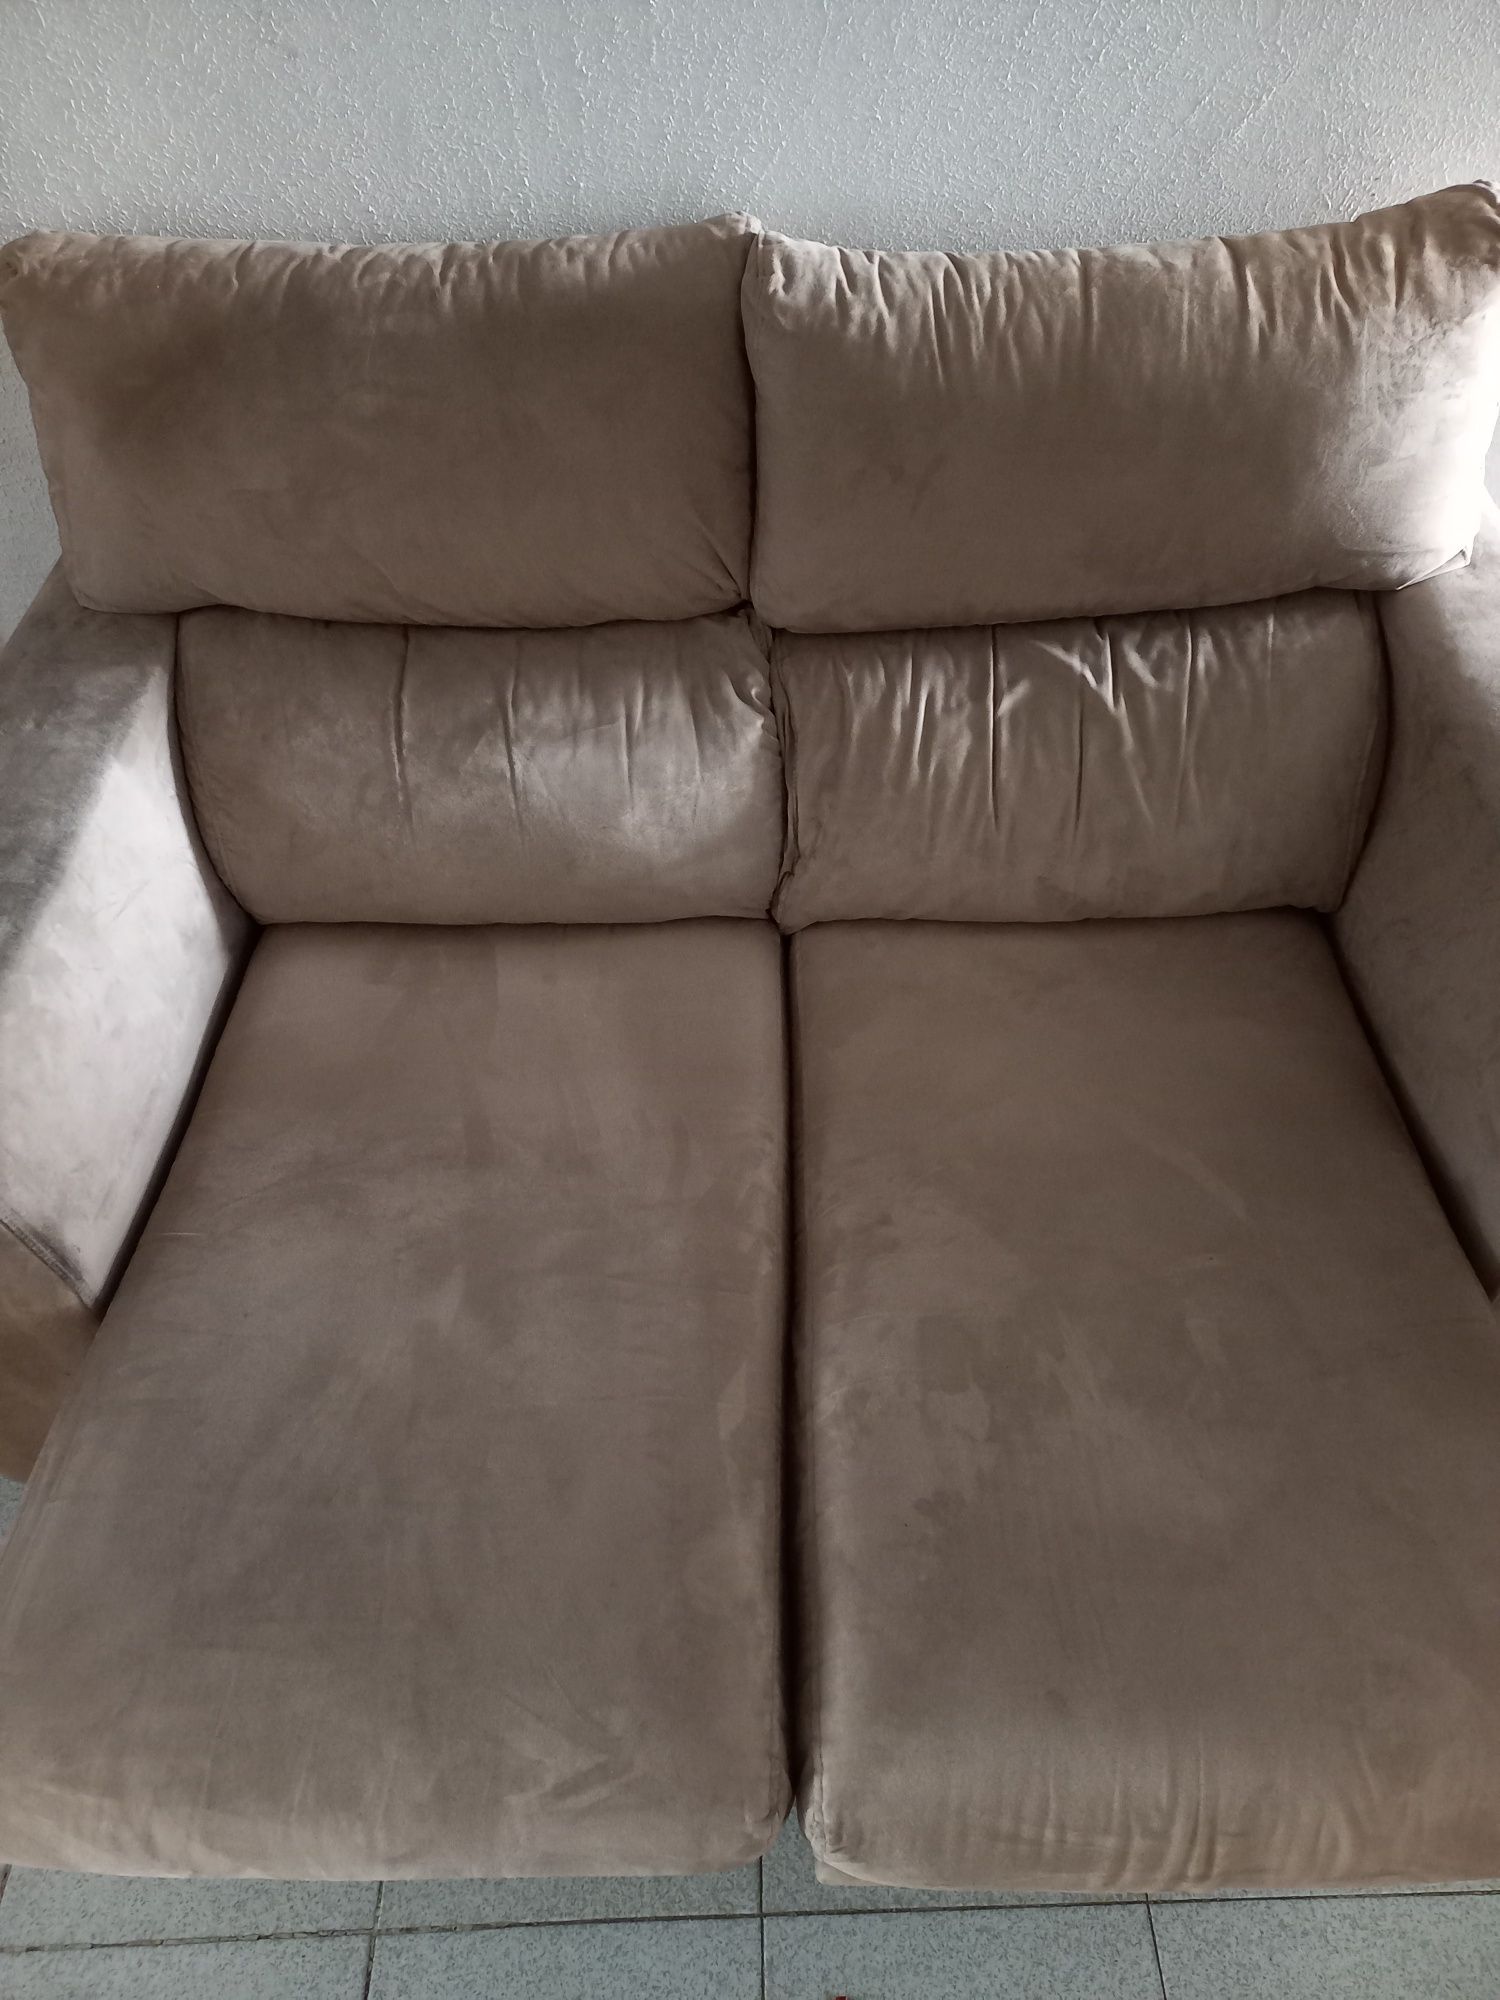 Sofa robusto - excelente estado - core bege